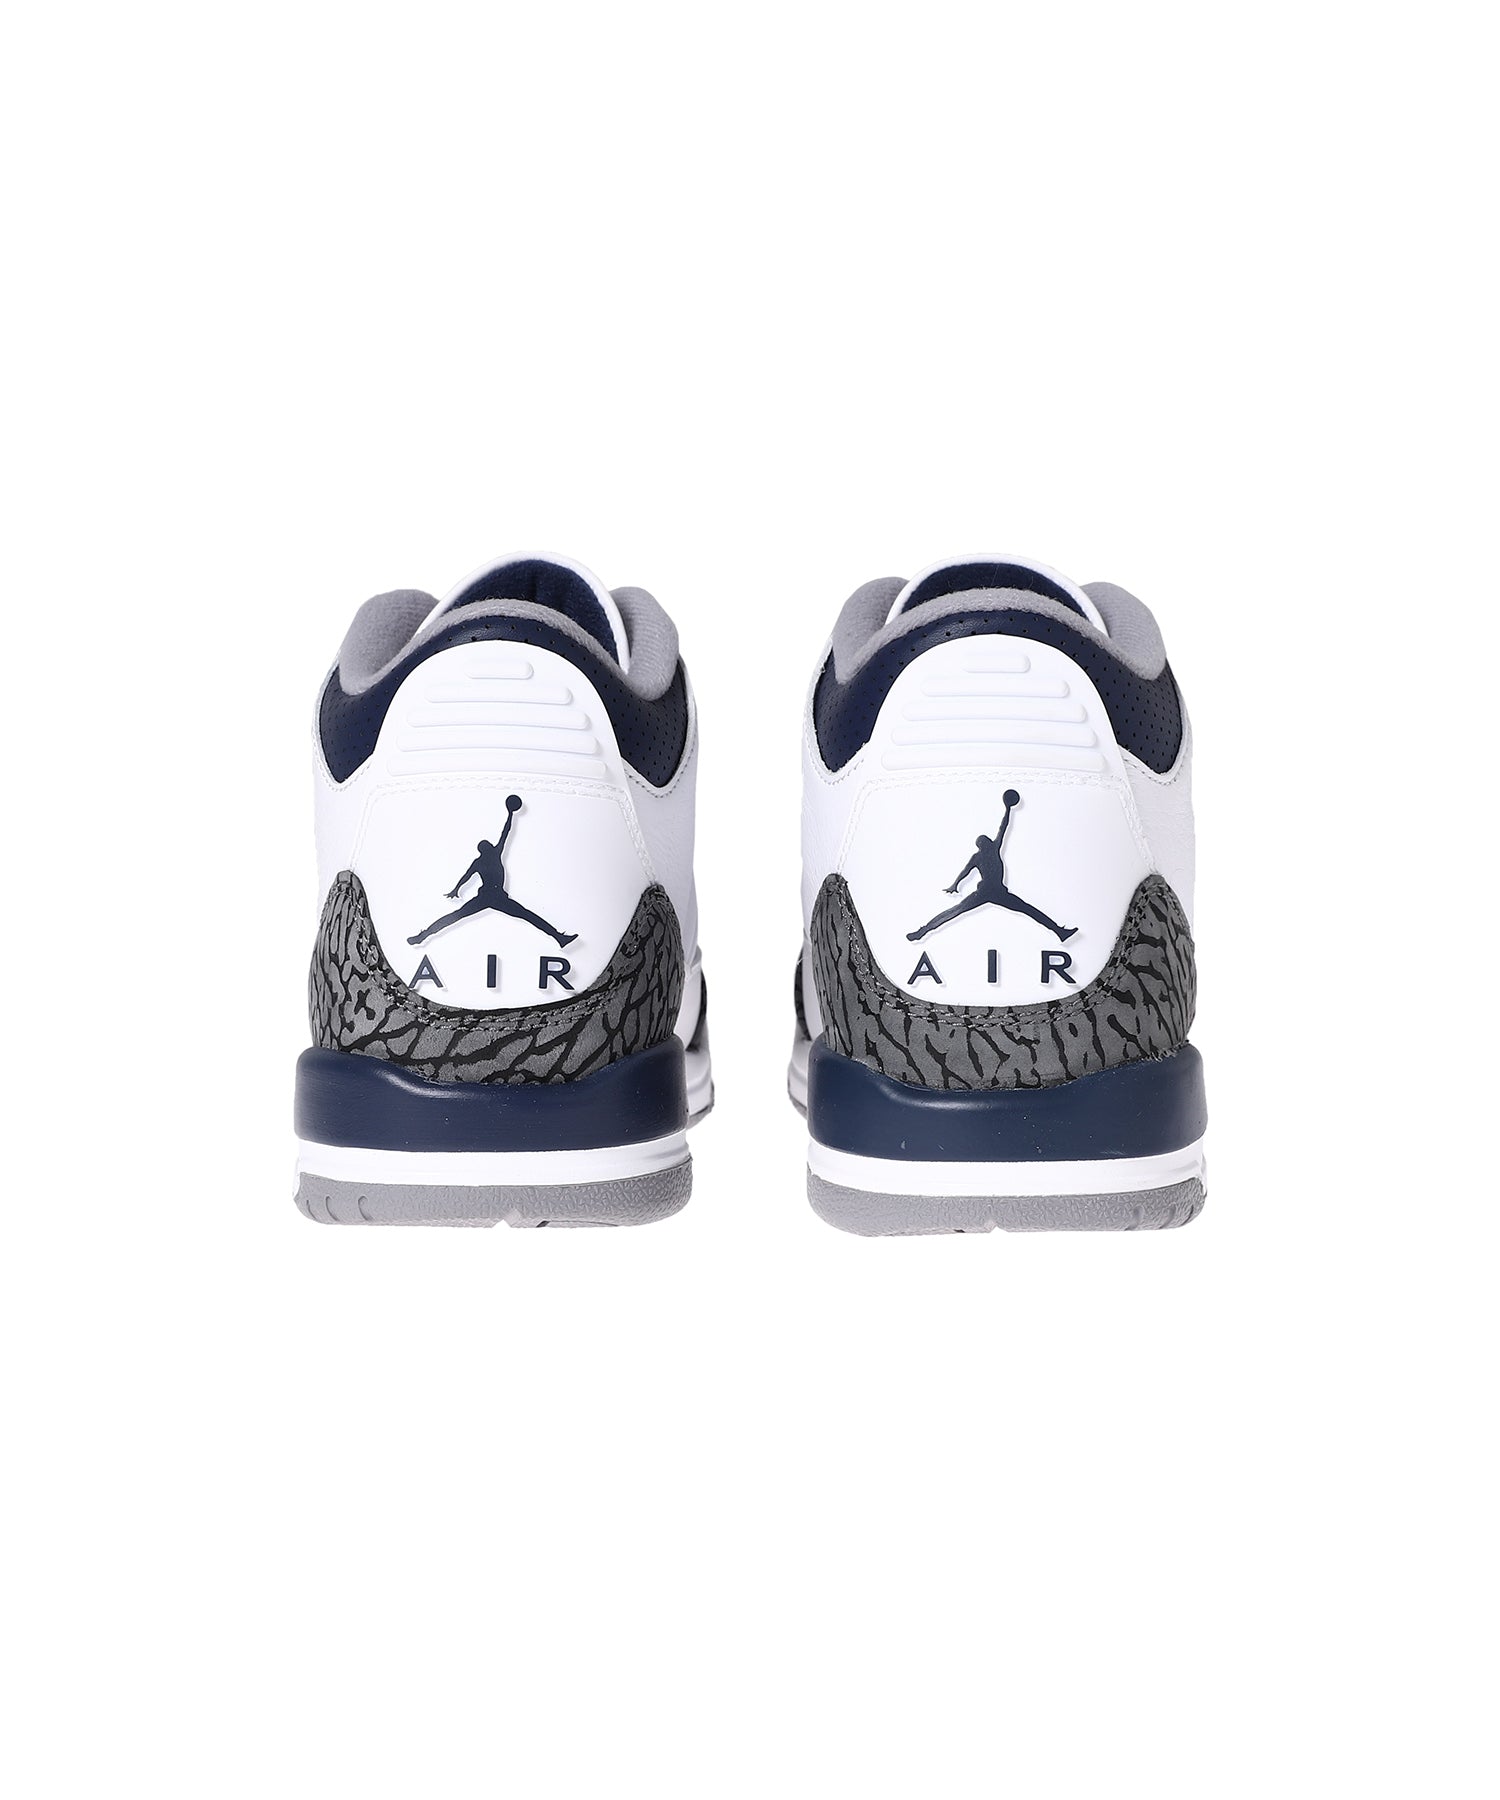 Air Jordan 3 Retro Gs